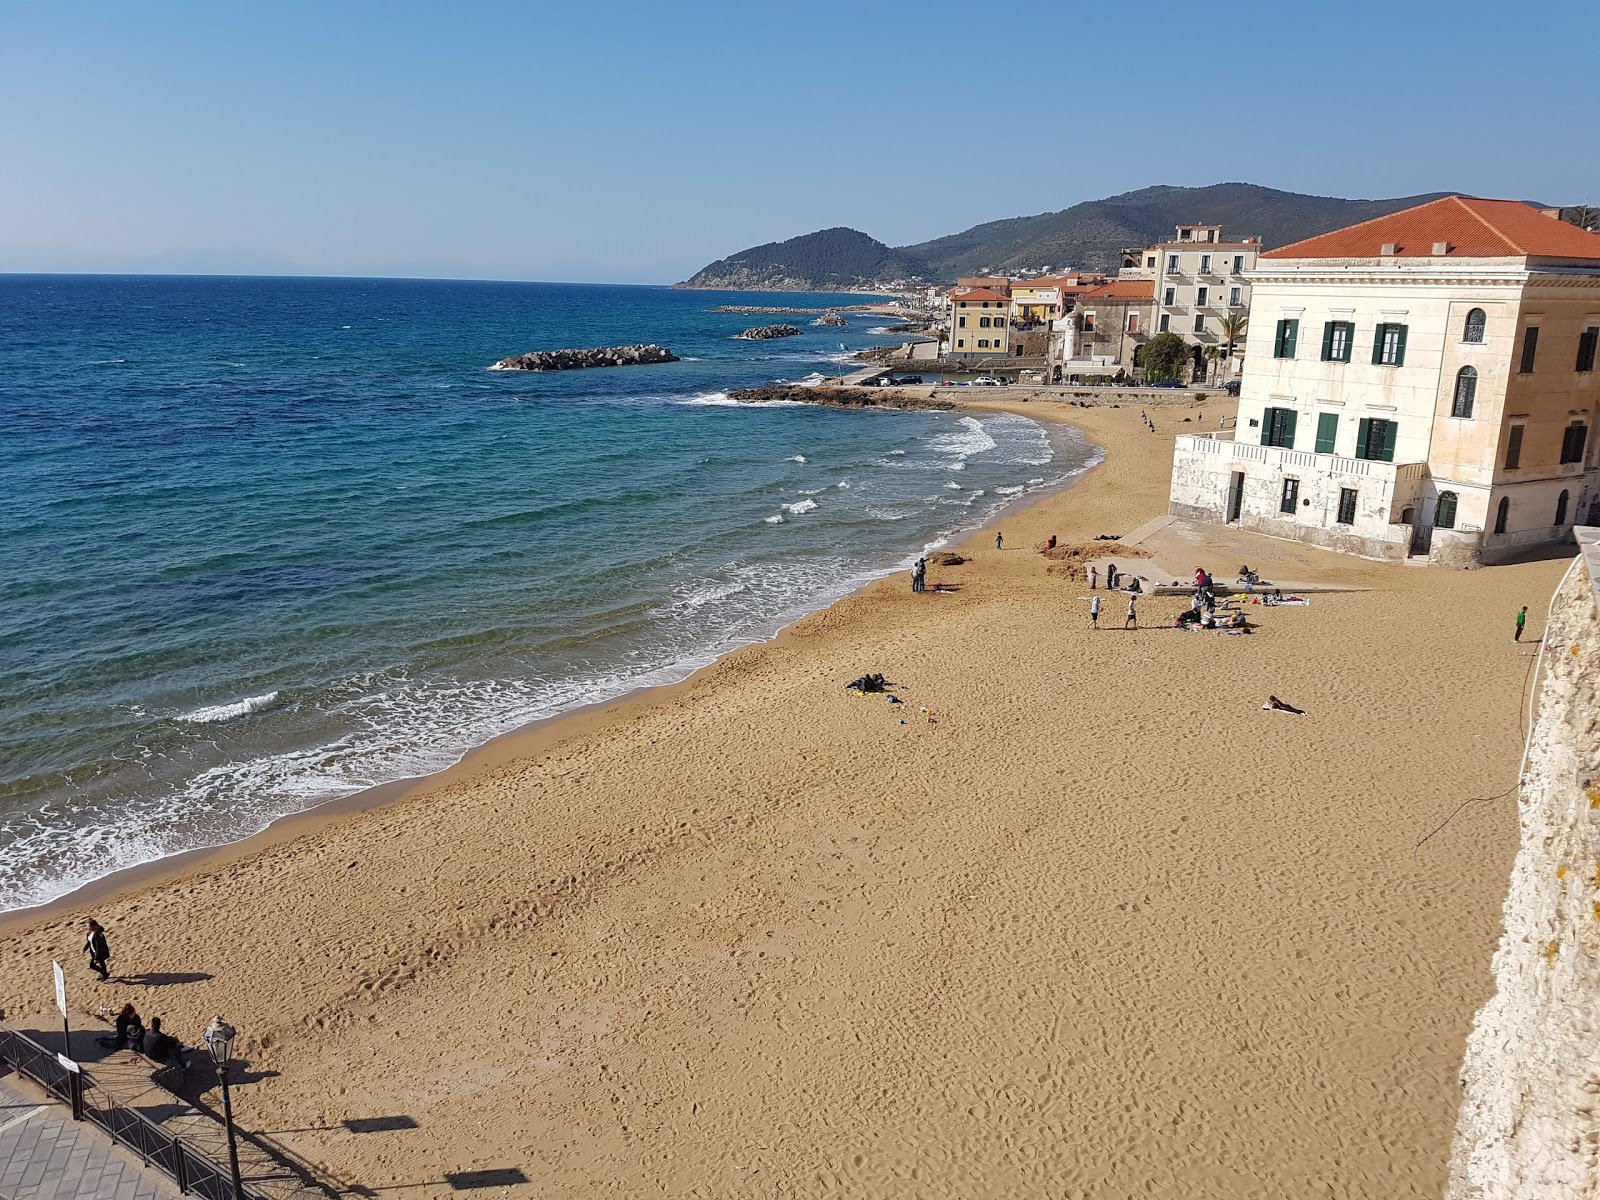 Marina Piccola beach'in fotoğrafı i̇nce kahverengi kum yüzey ile